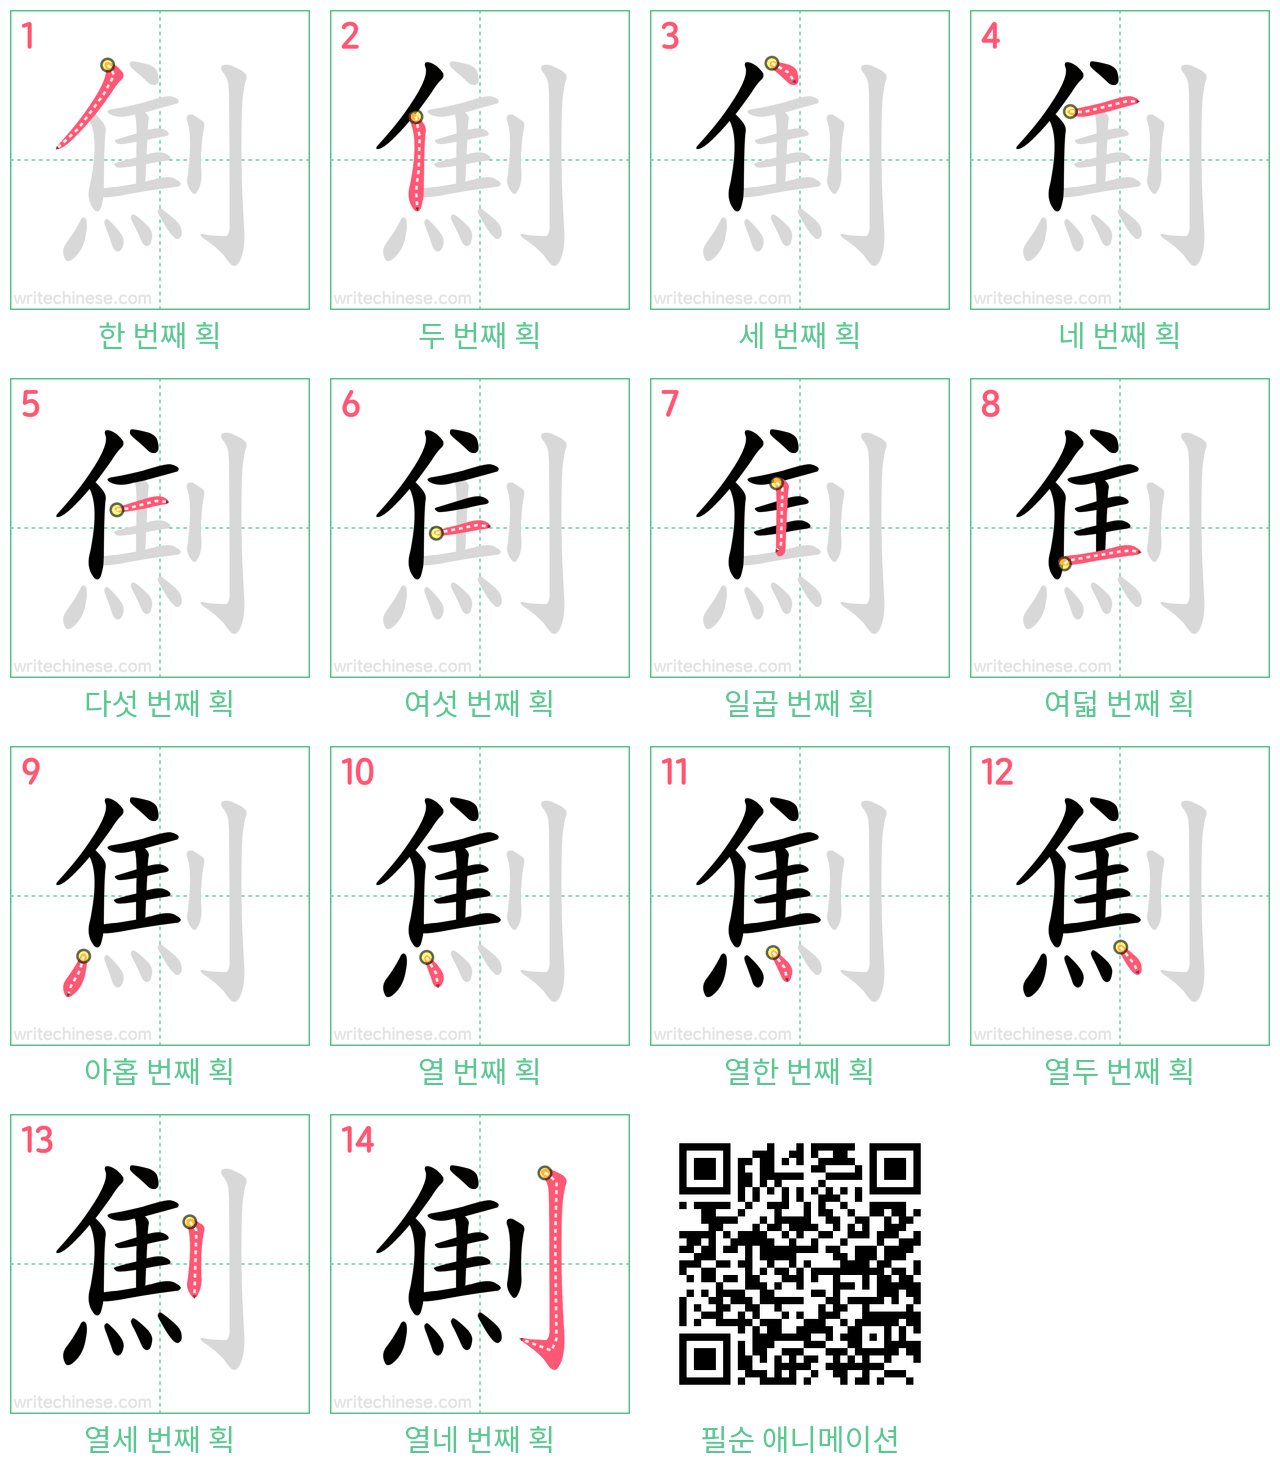 劁 step-by-step stroke order diagrams